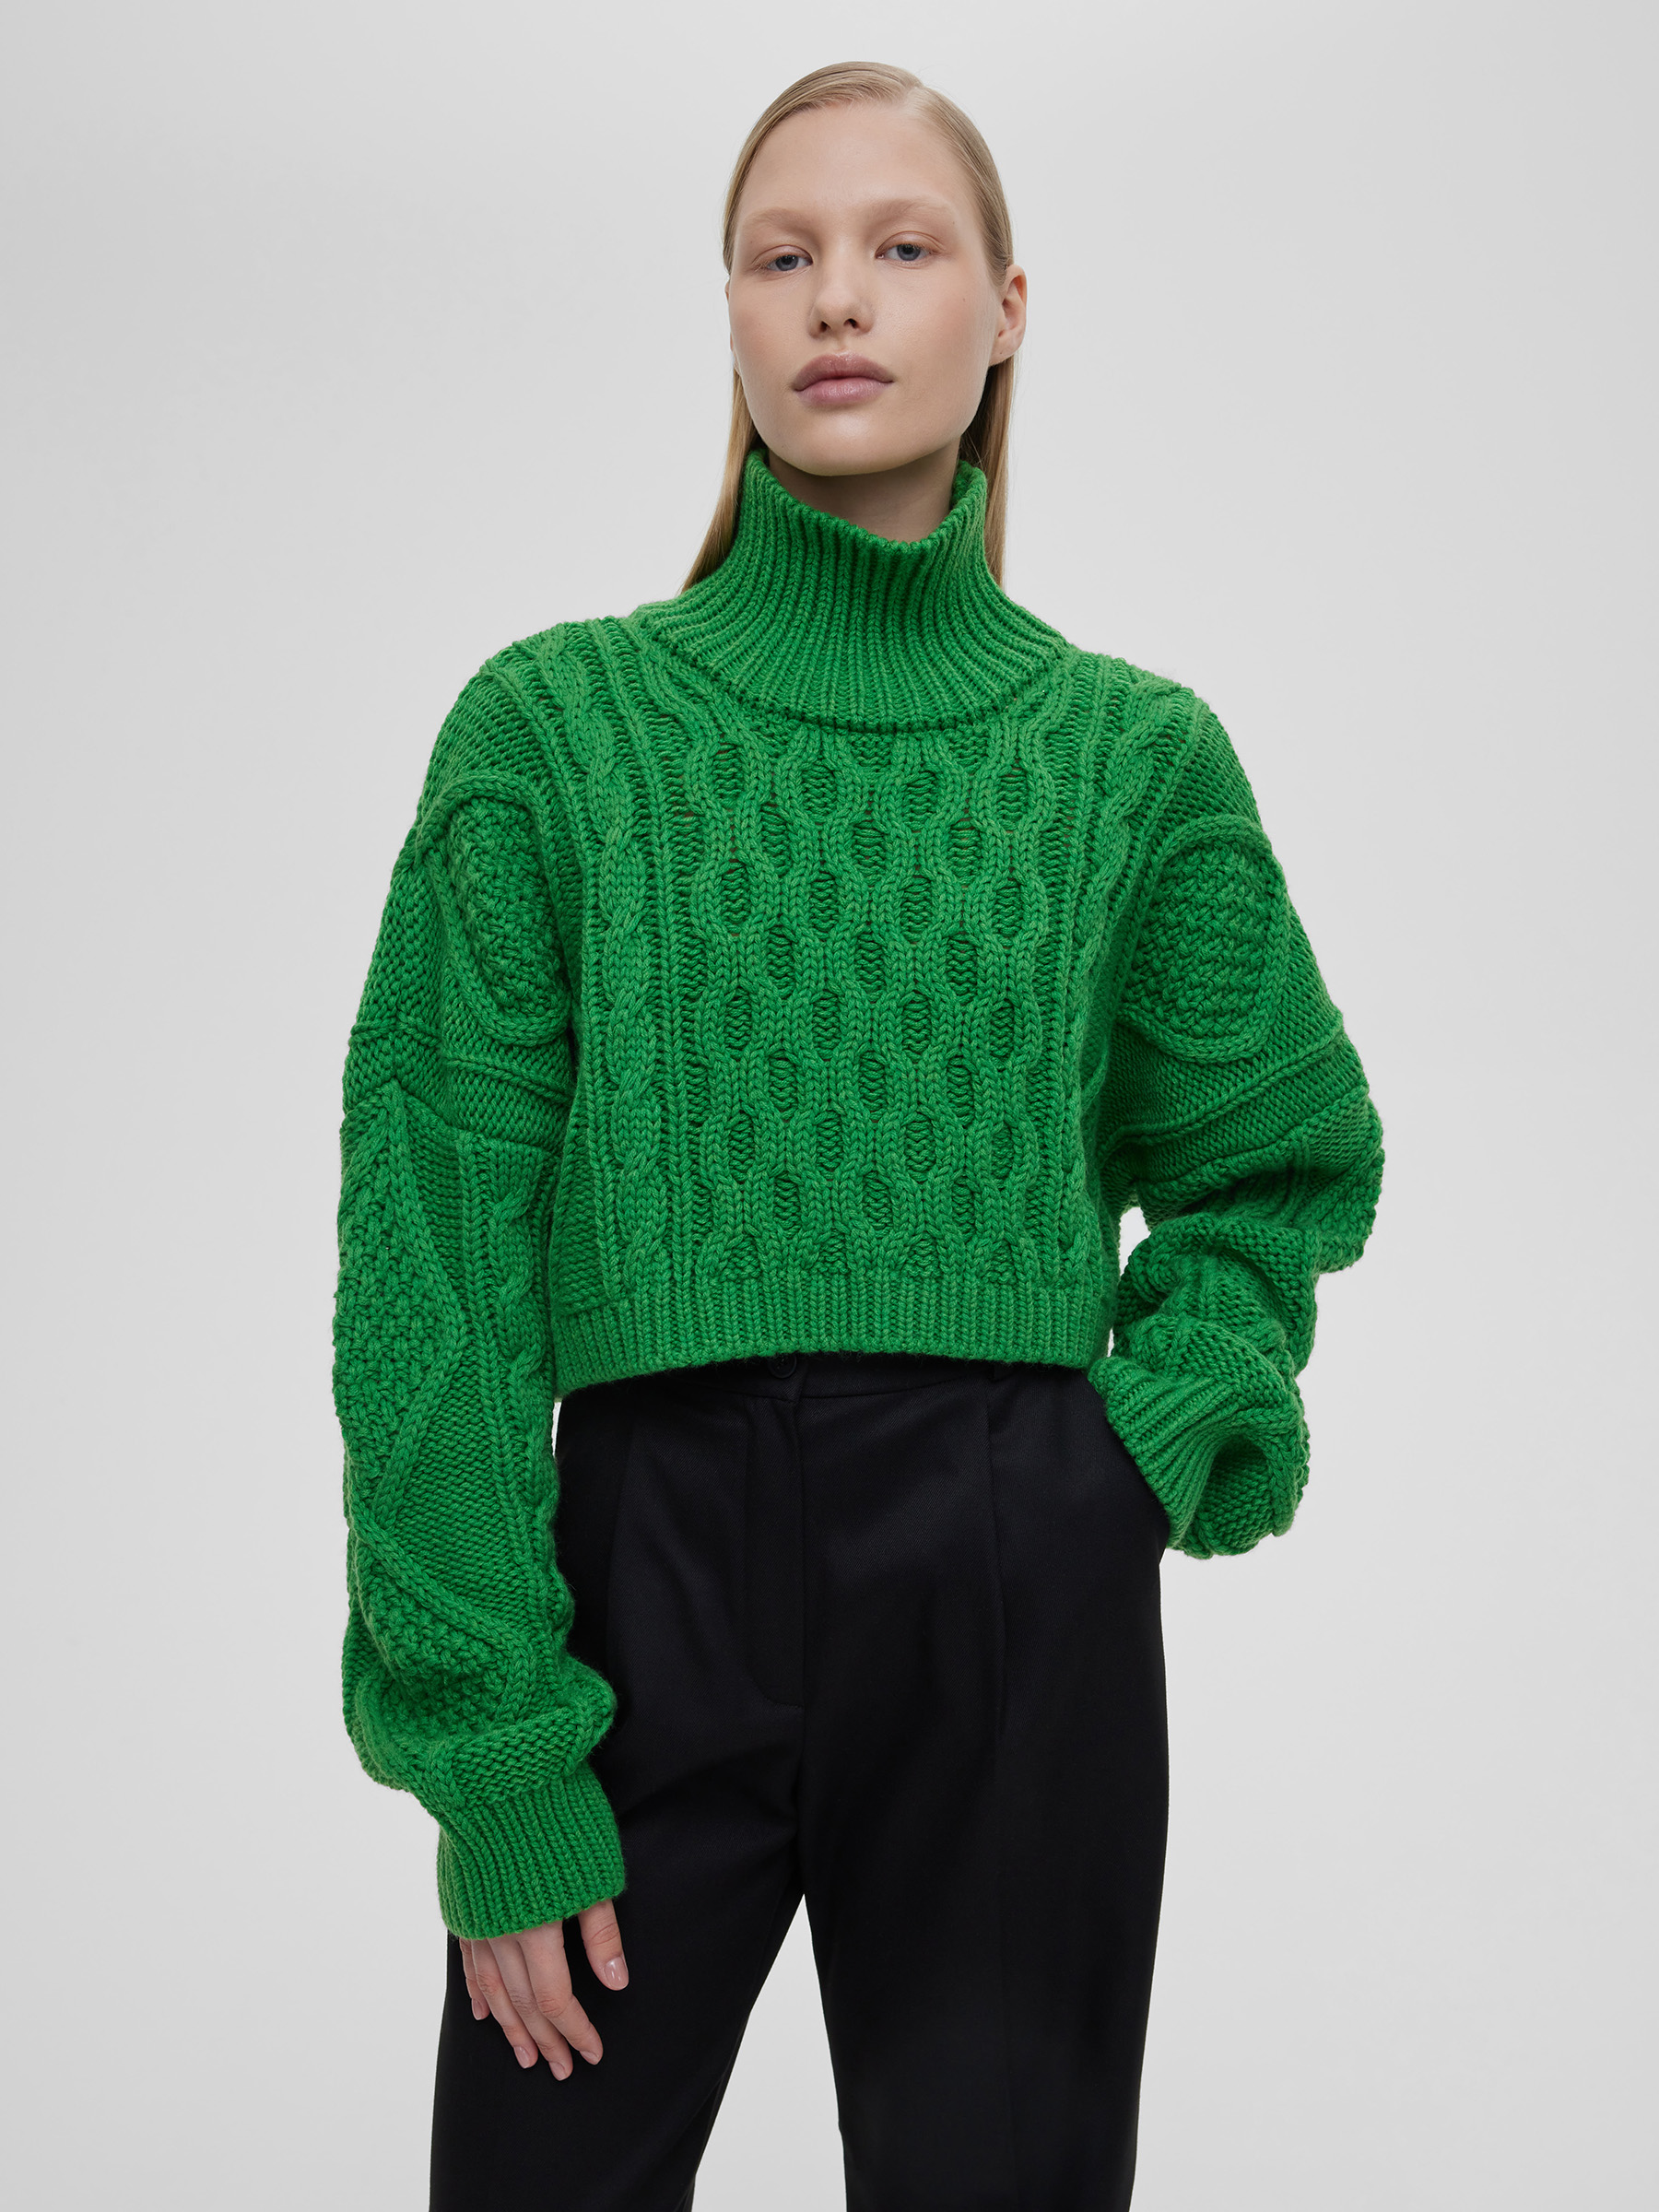 Свитер женский короткий с аранами, цвет – зеленый свитер женский с молнией крупной вязки цвет – молочный